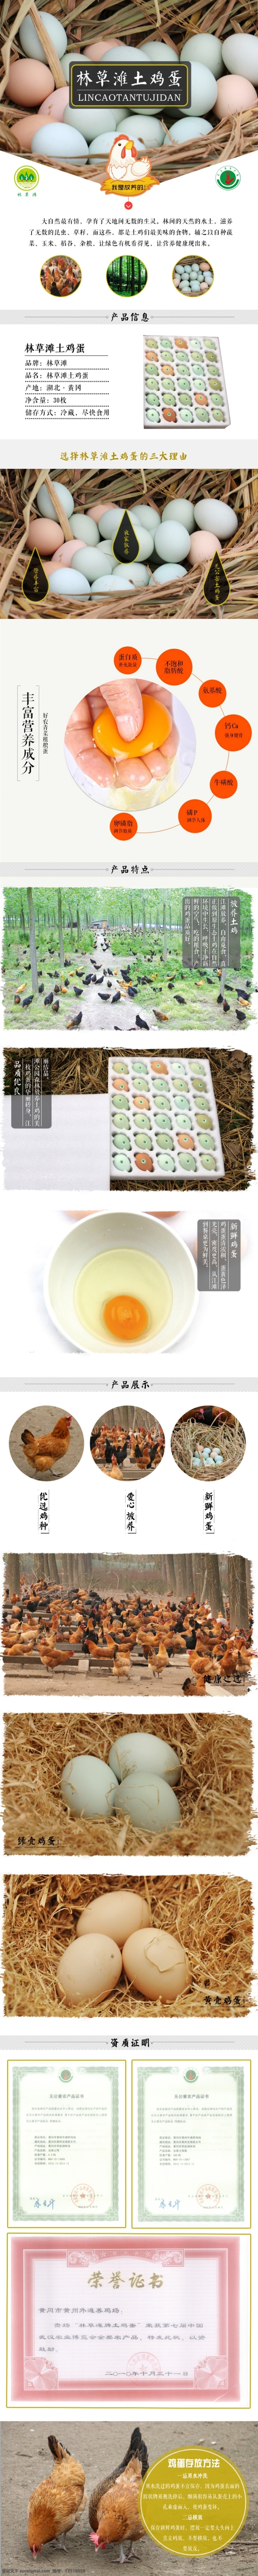 散养 土鸡 蛋 详情页 淘宝图片 淘宝 蛋类 安全 健康